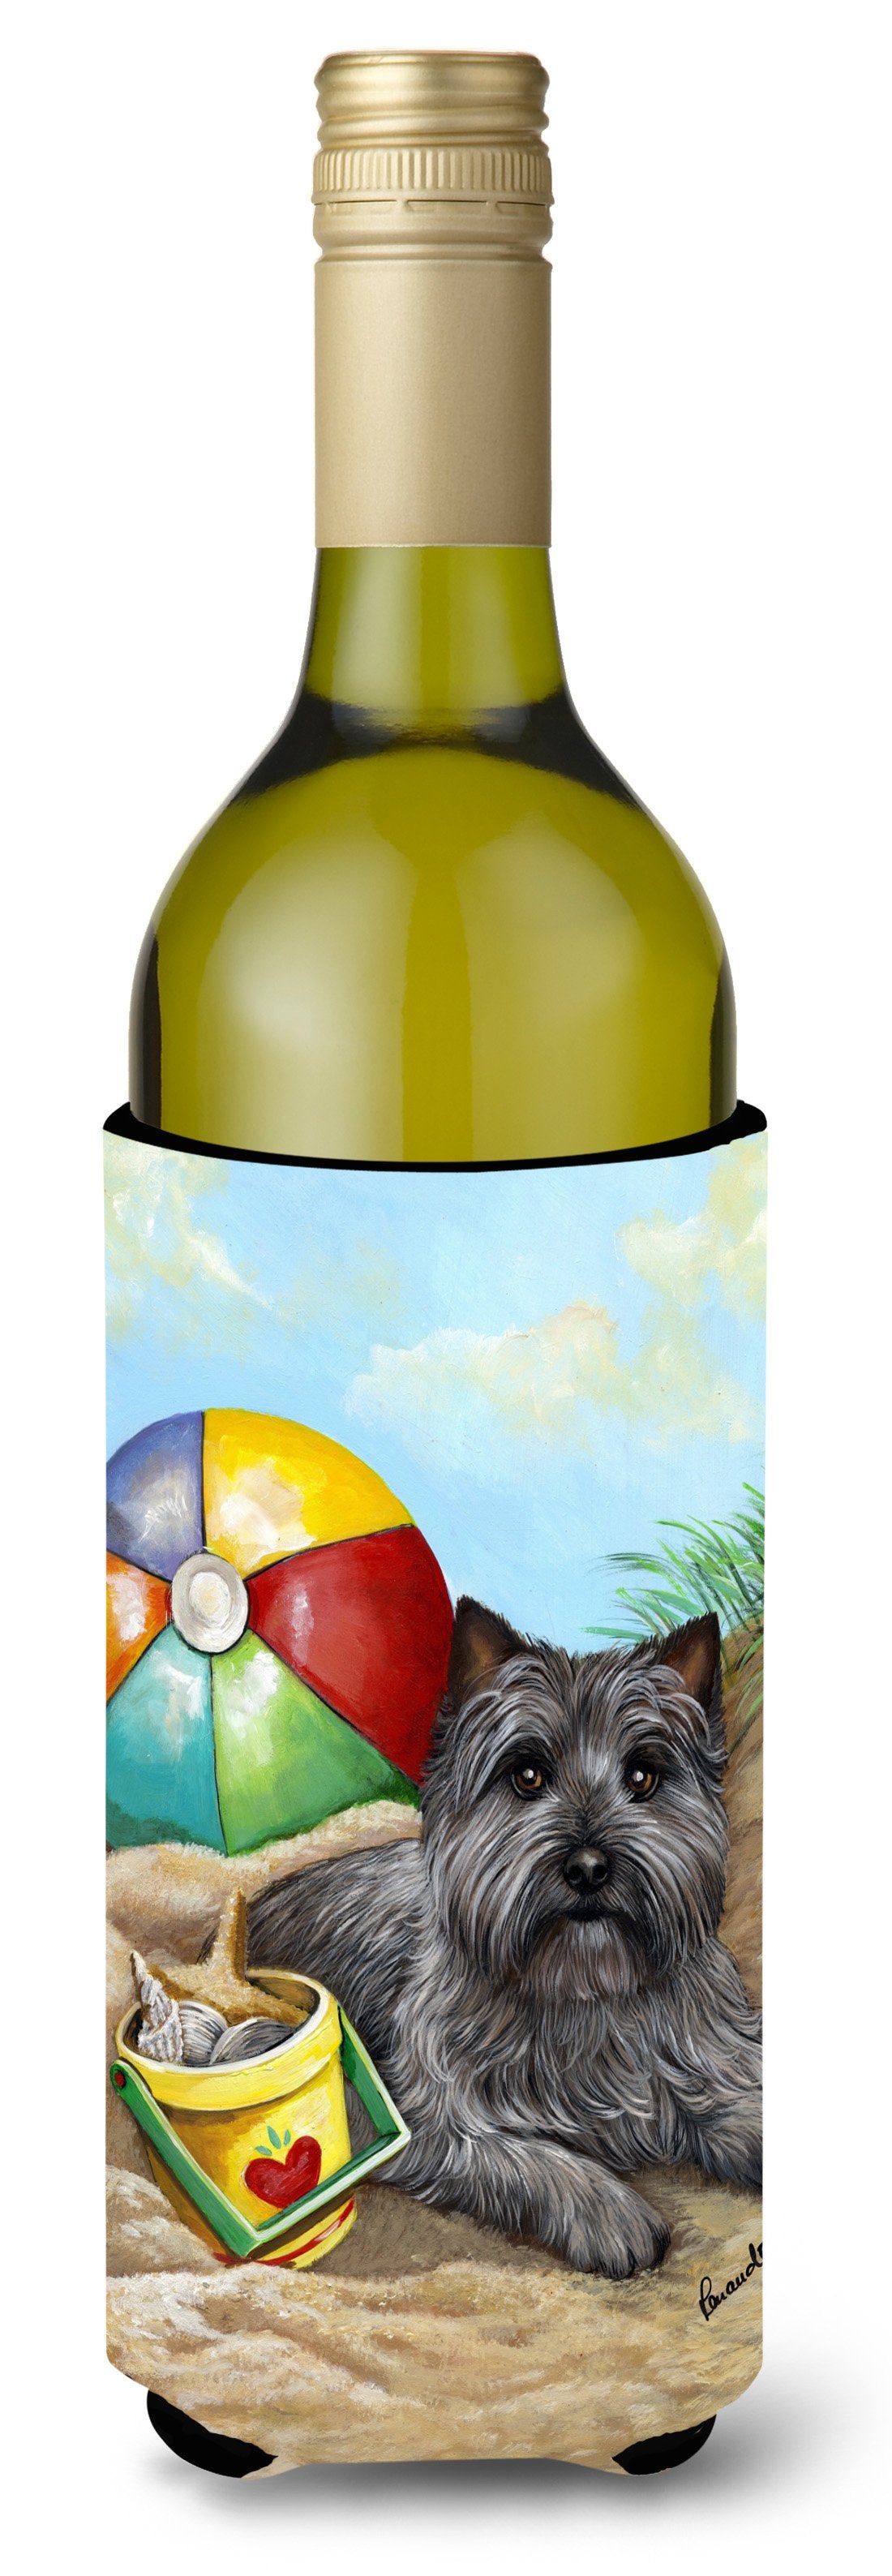 Cairn Terrier At the Beach Wine Bottle Hugger PPP3048LITERK by Caroline's Treasures